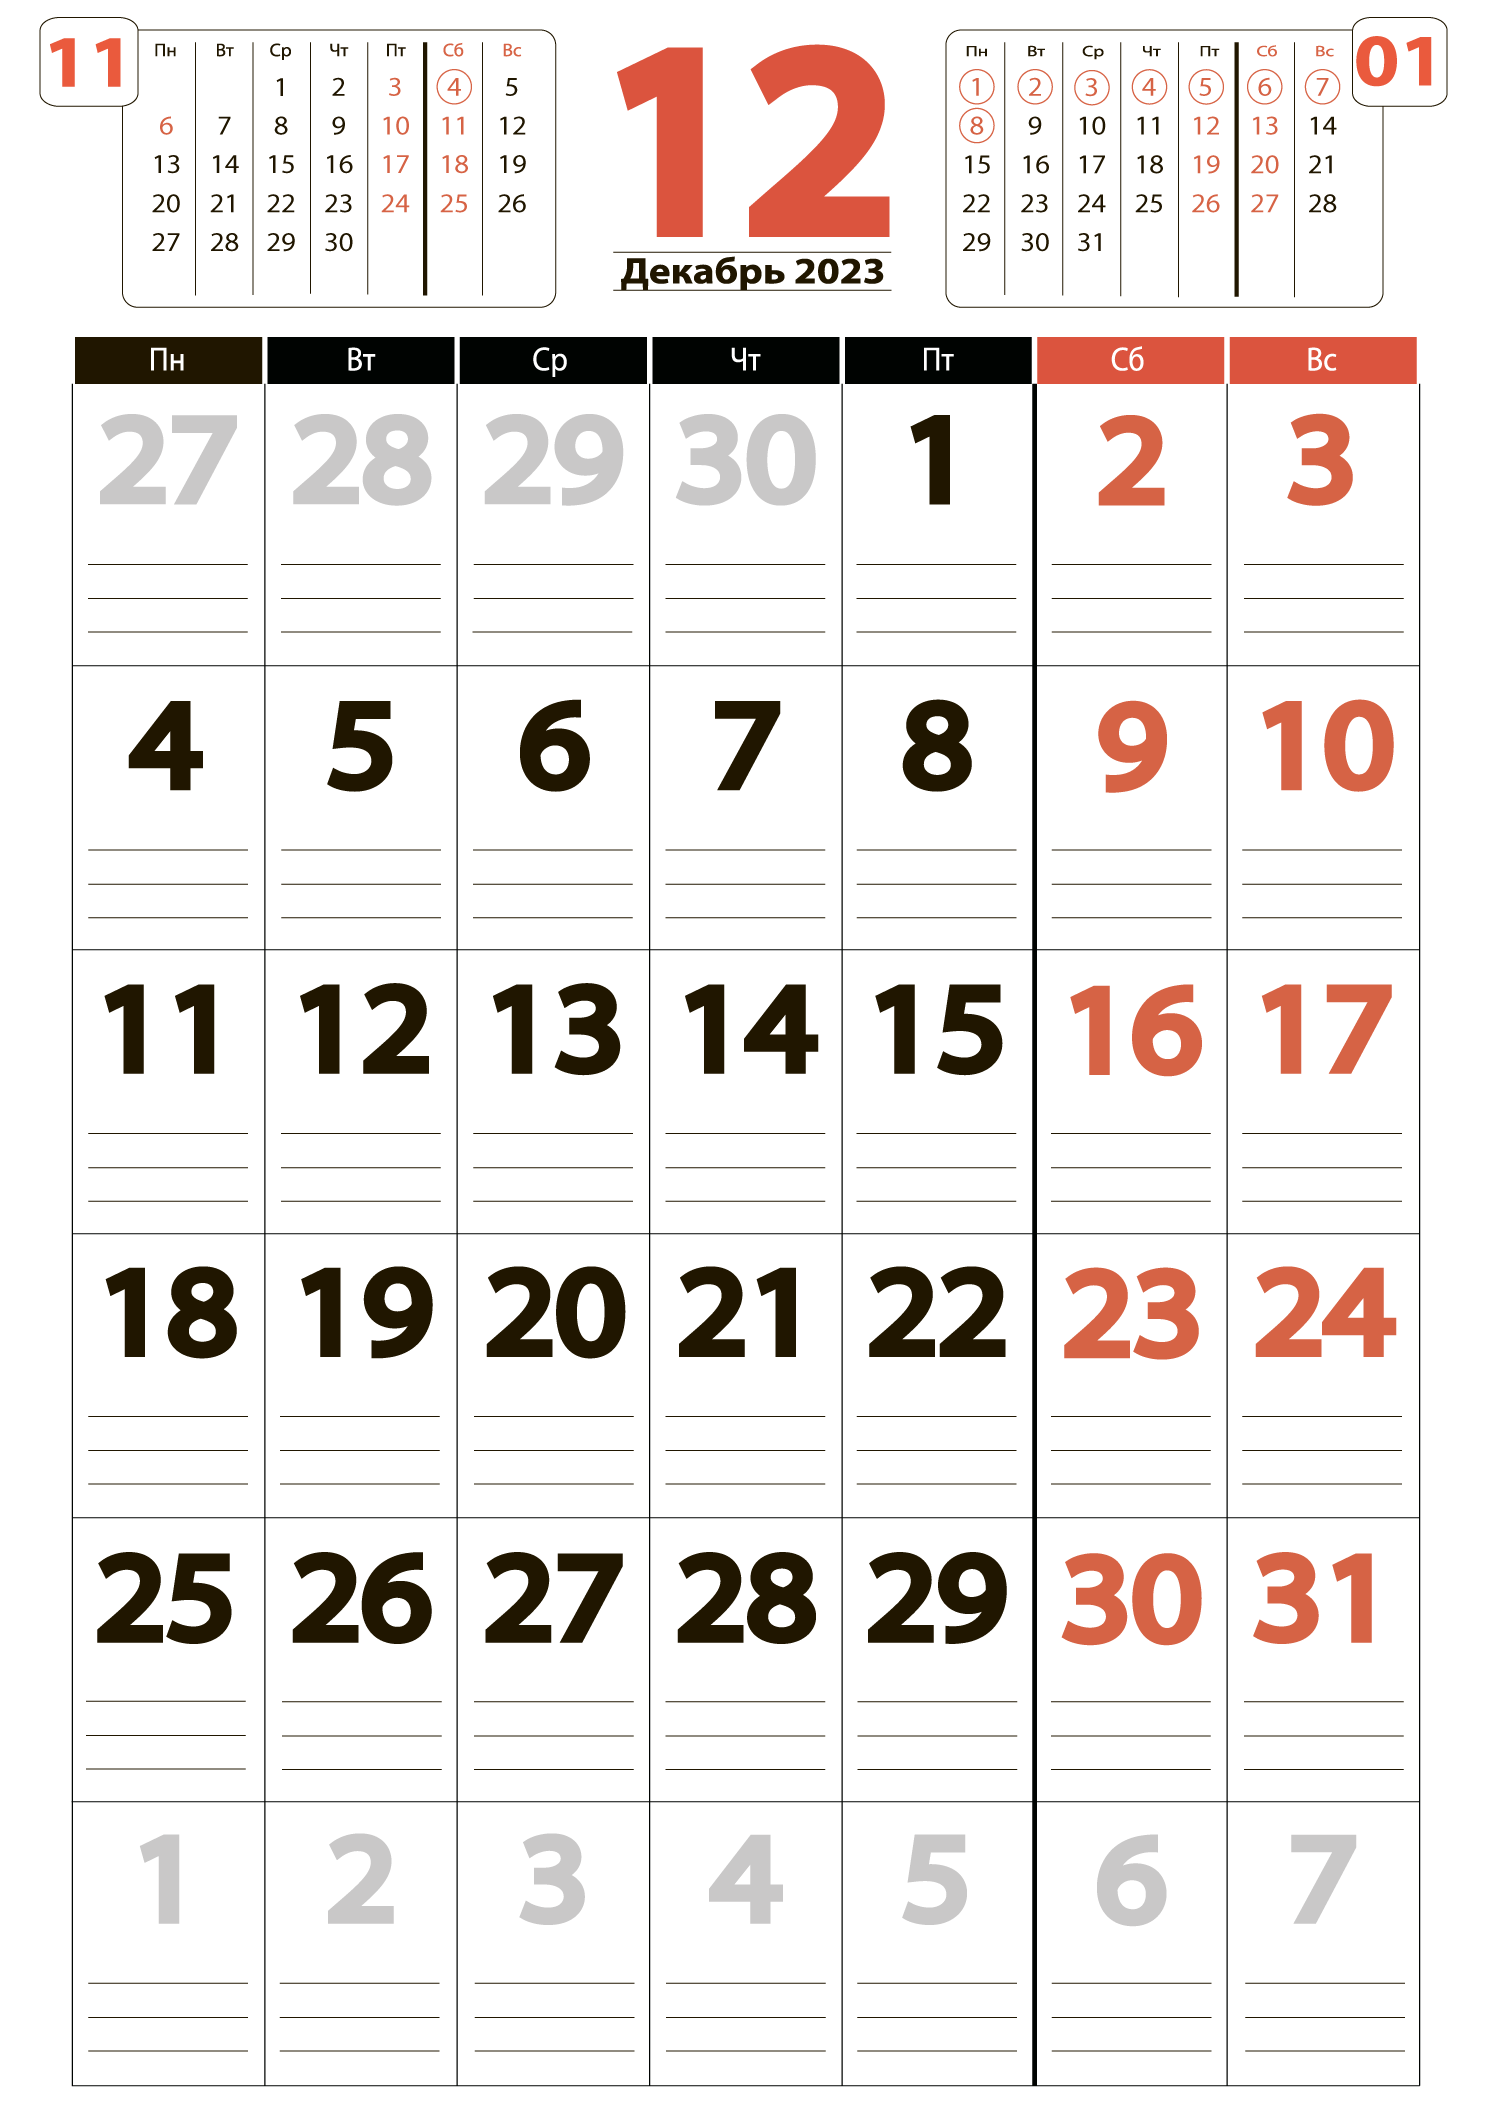 Печать крупного календаря на декабрь 2023